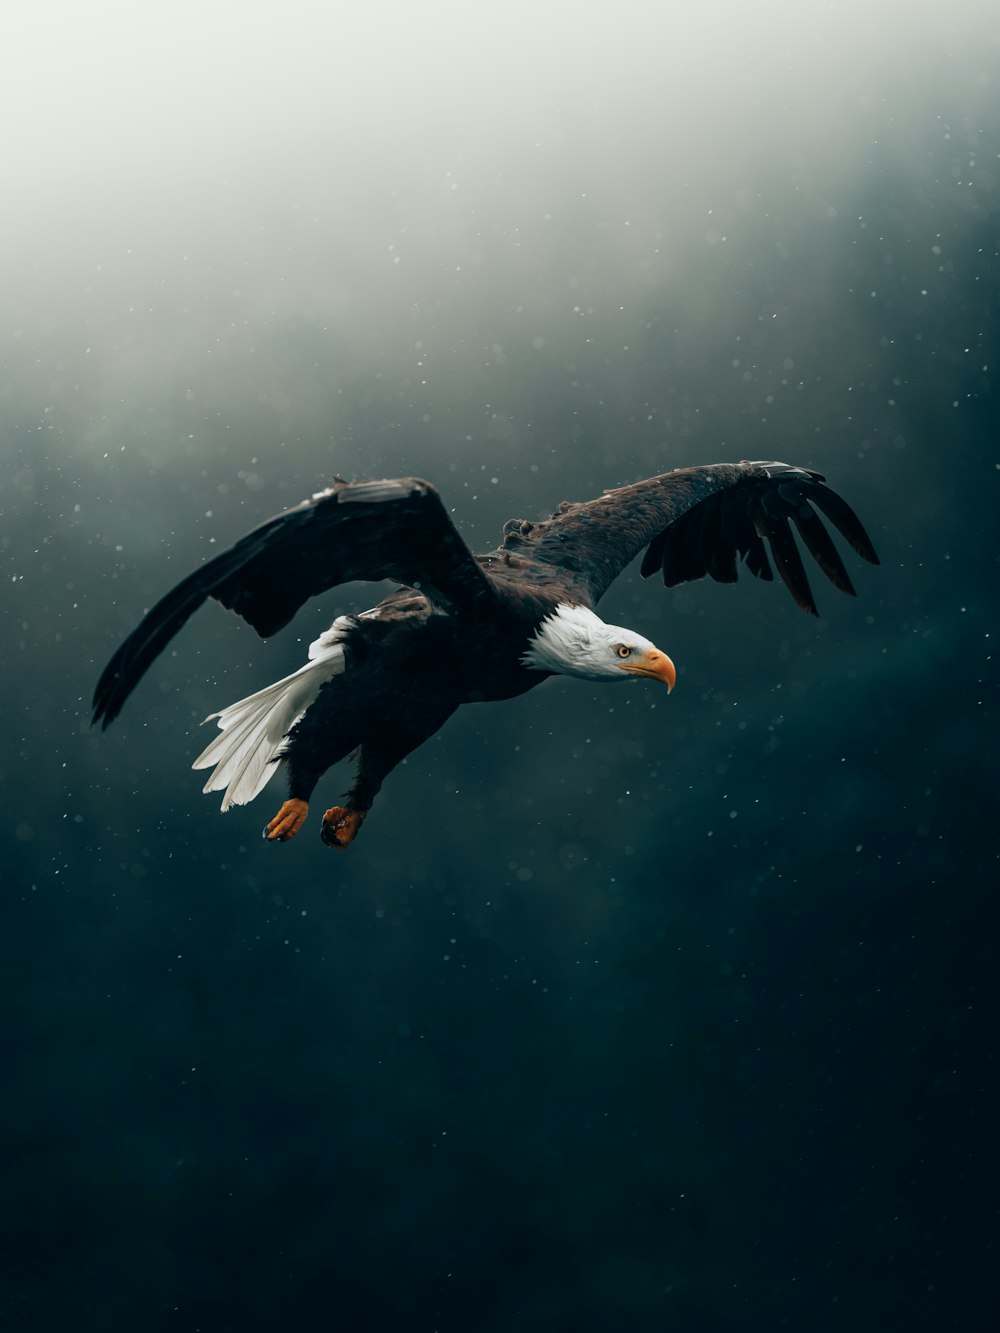 águila blanca y negra volando